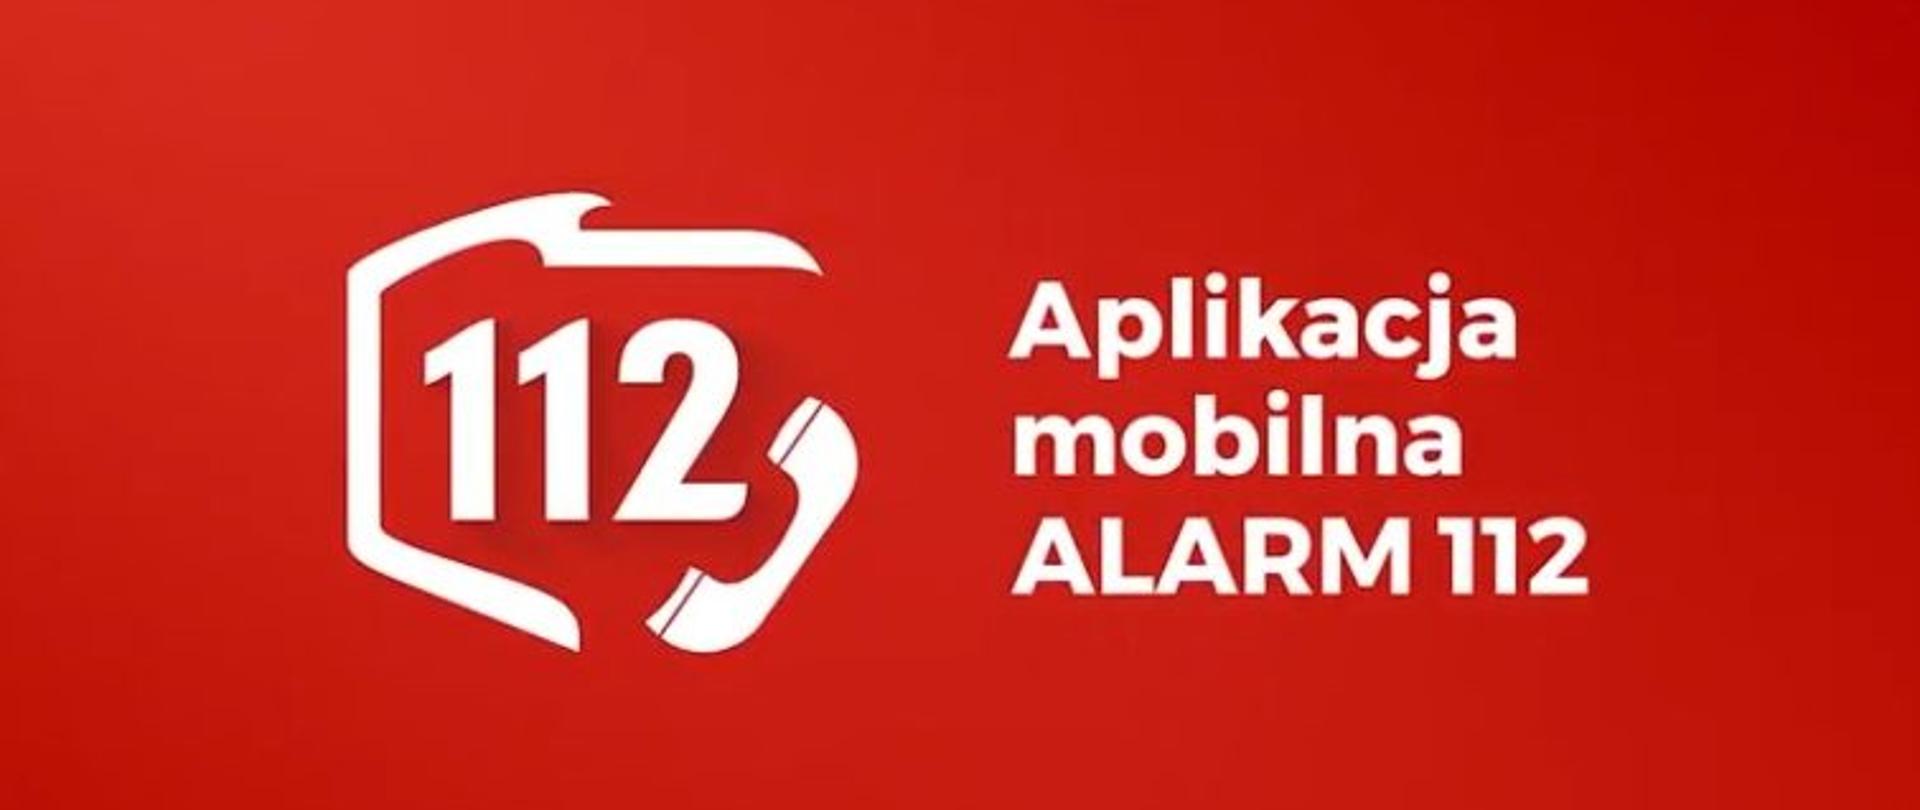 aplikacja 112 - logo na czerwonym tle